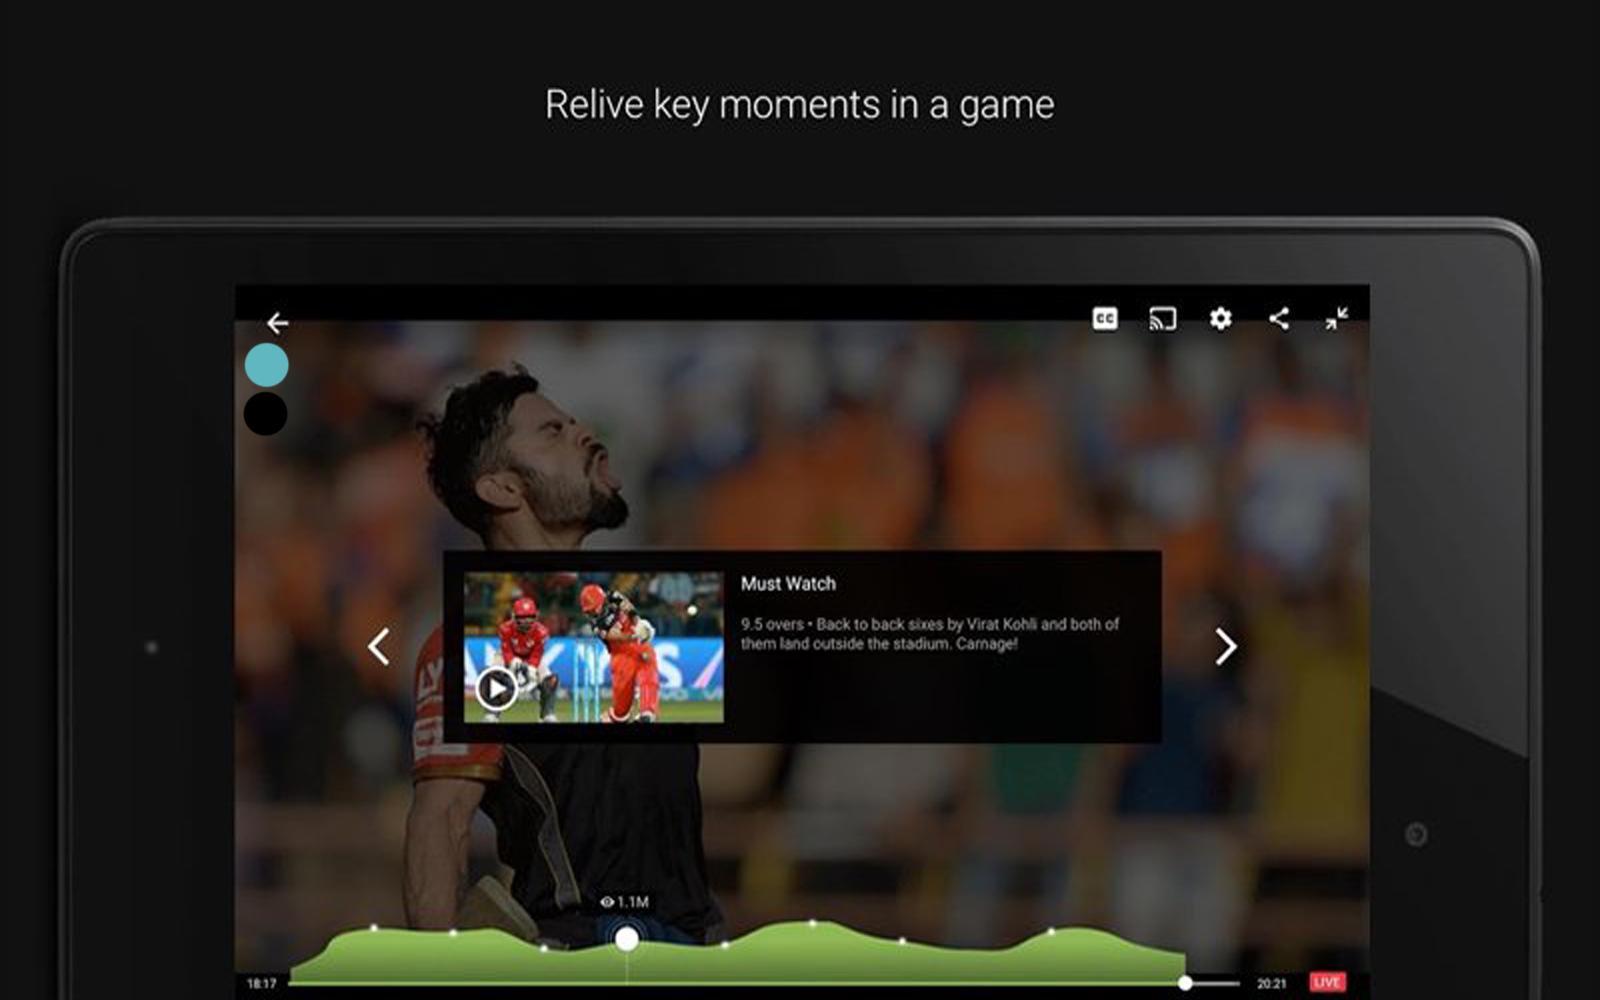 Fantasy Football app. Футбольный менеджер на андроид. Exclusive Video. Chat screenshot. Live match watch